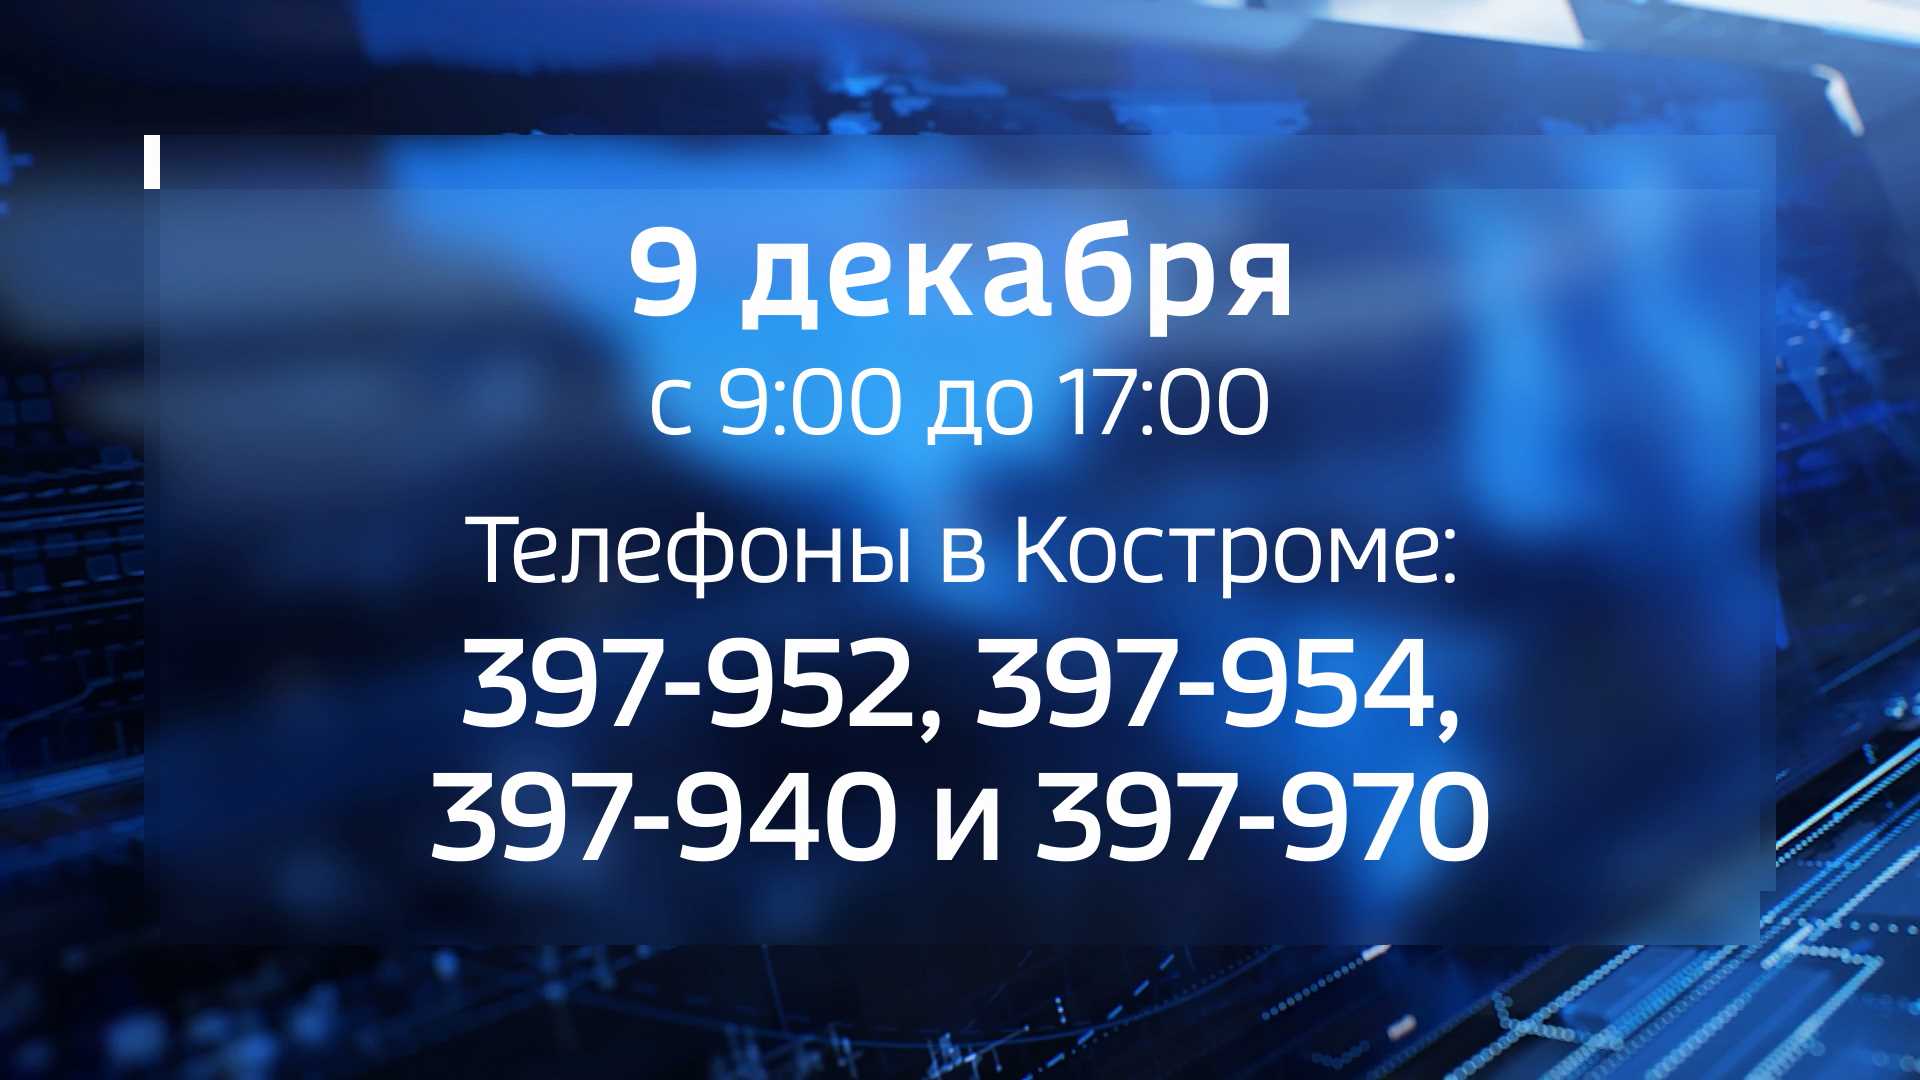 Костромичи могут пожаловаться на коррупцию по телефону «горячей линии»